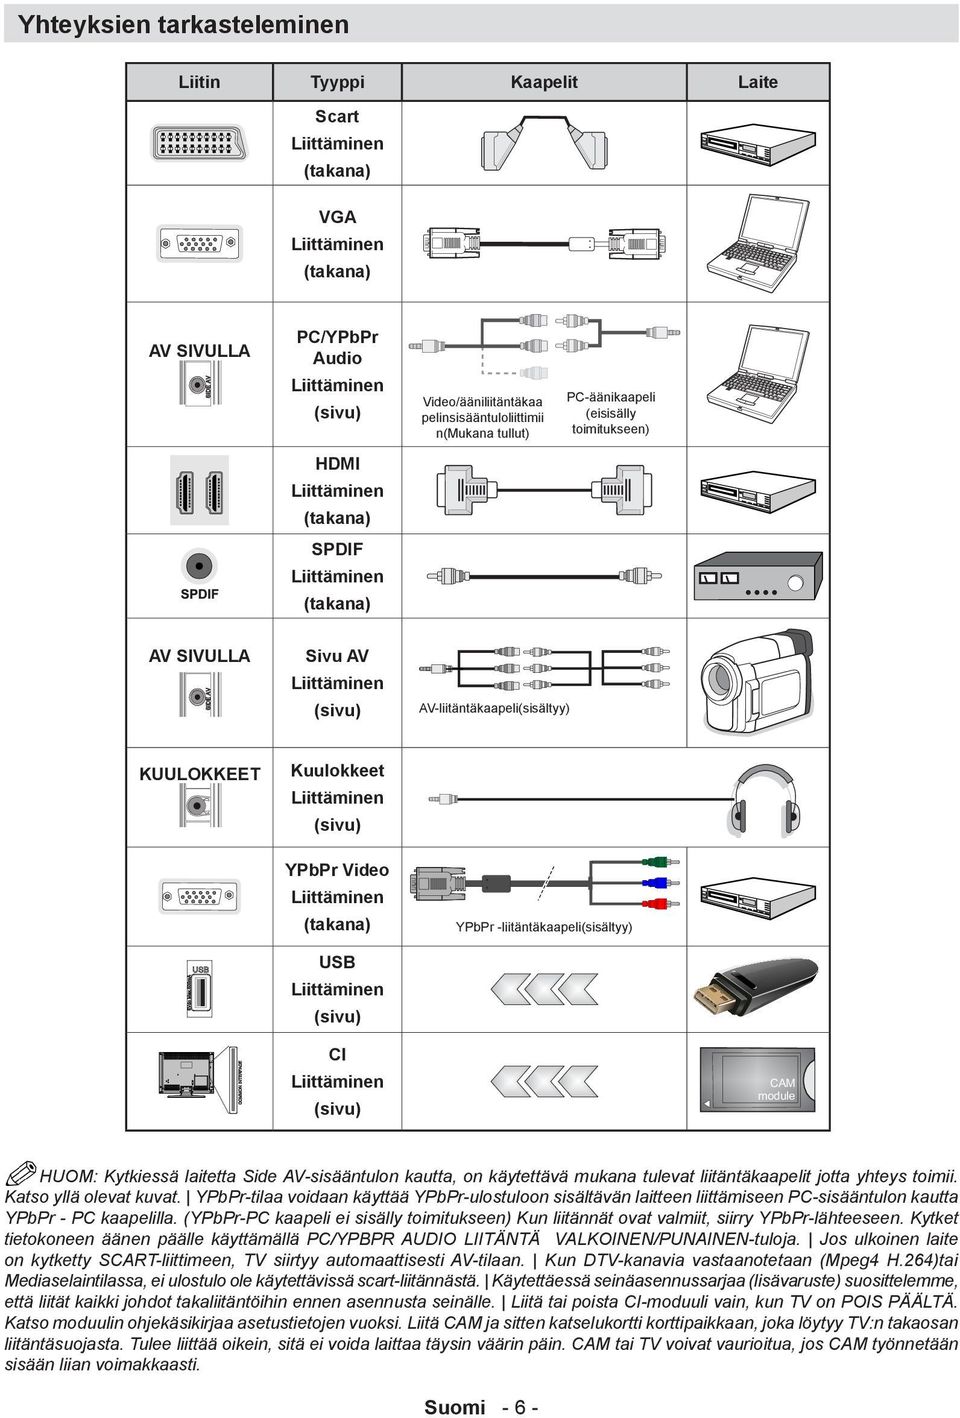 Kuulokkeet Liittäminen (sivu) YPbPr Video Liittäminen (takana) USB Liittäminen (sivu) YPbPr -liitäntäkaapeli(sisältyy) CI Liittäminen (sivu) HUOM: Kytkiessä laitetta Side AV-sisääntulon kautta, on